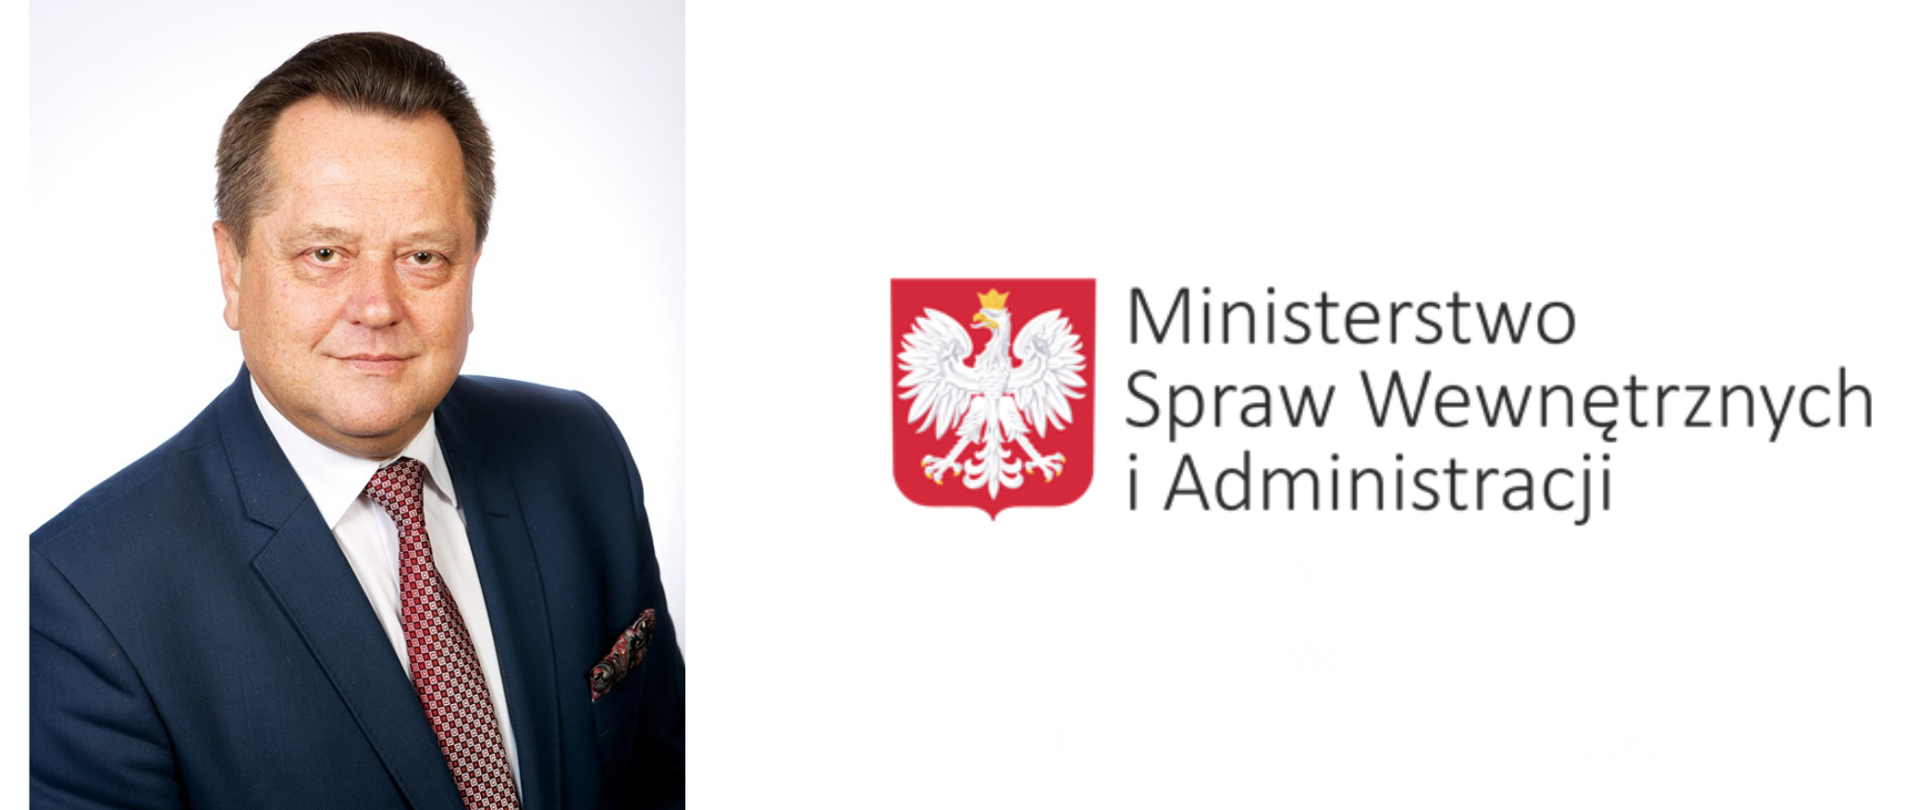 Sekretarz Stanu Ministerstwa Spraw Wewnętrznych i Administracji Jarosław Zieliński na białym tle obok logo ministerstwa